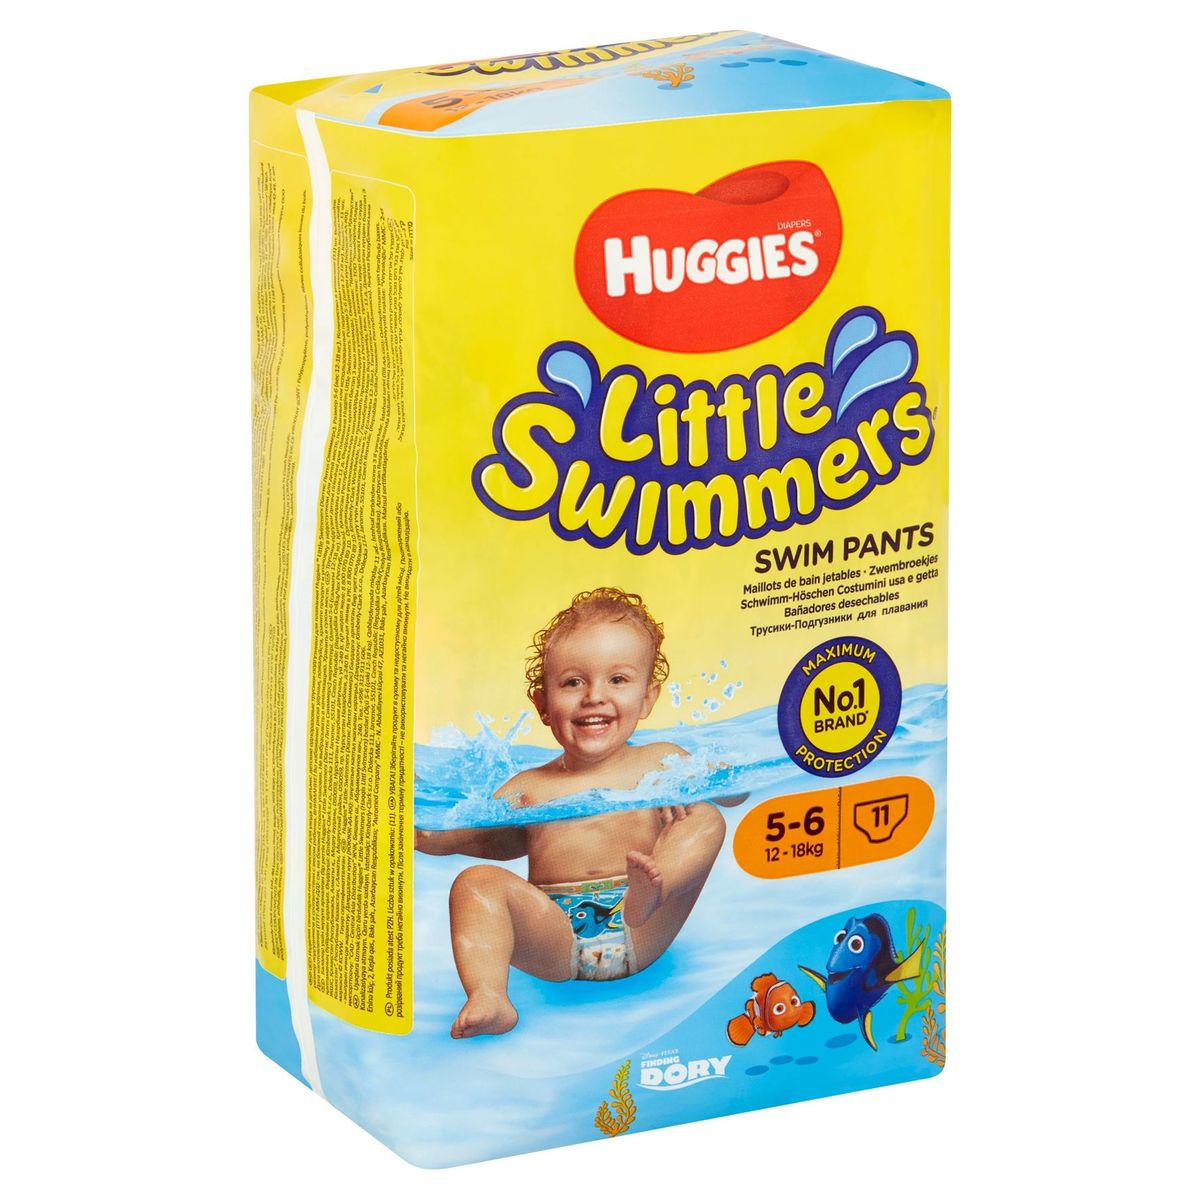 Huggies Little Swimmers Zwembroekjes 5-6 12-18kg 11 Stuks